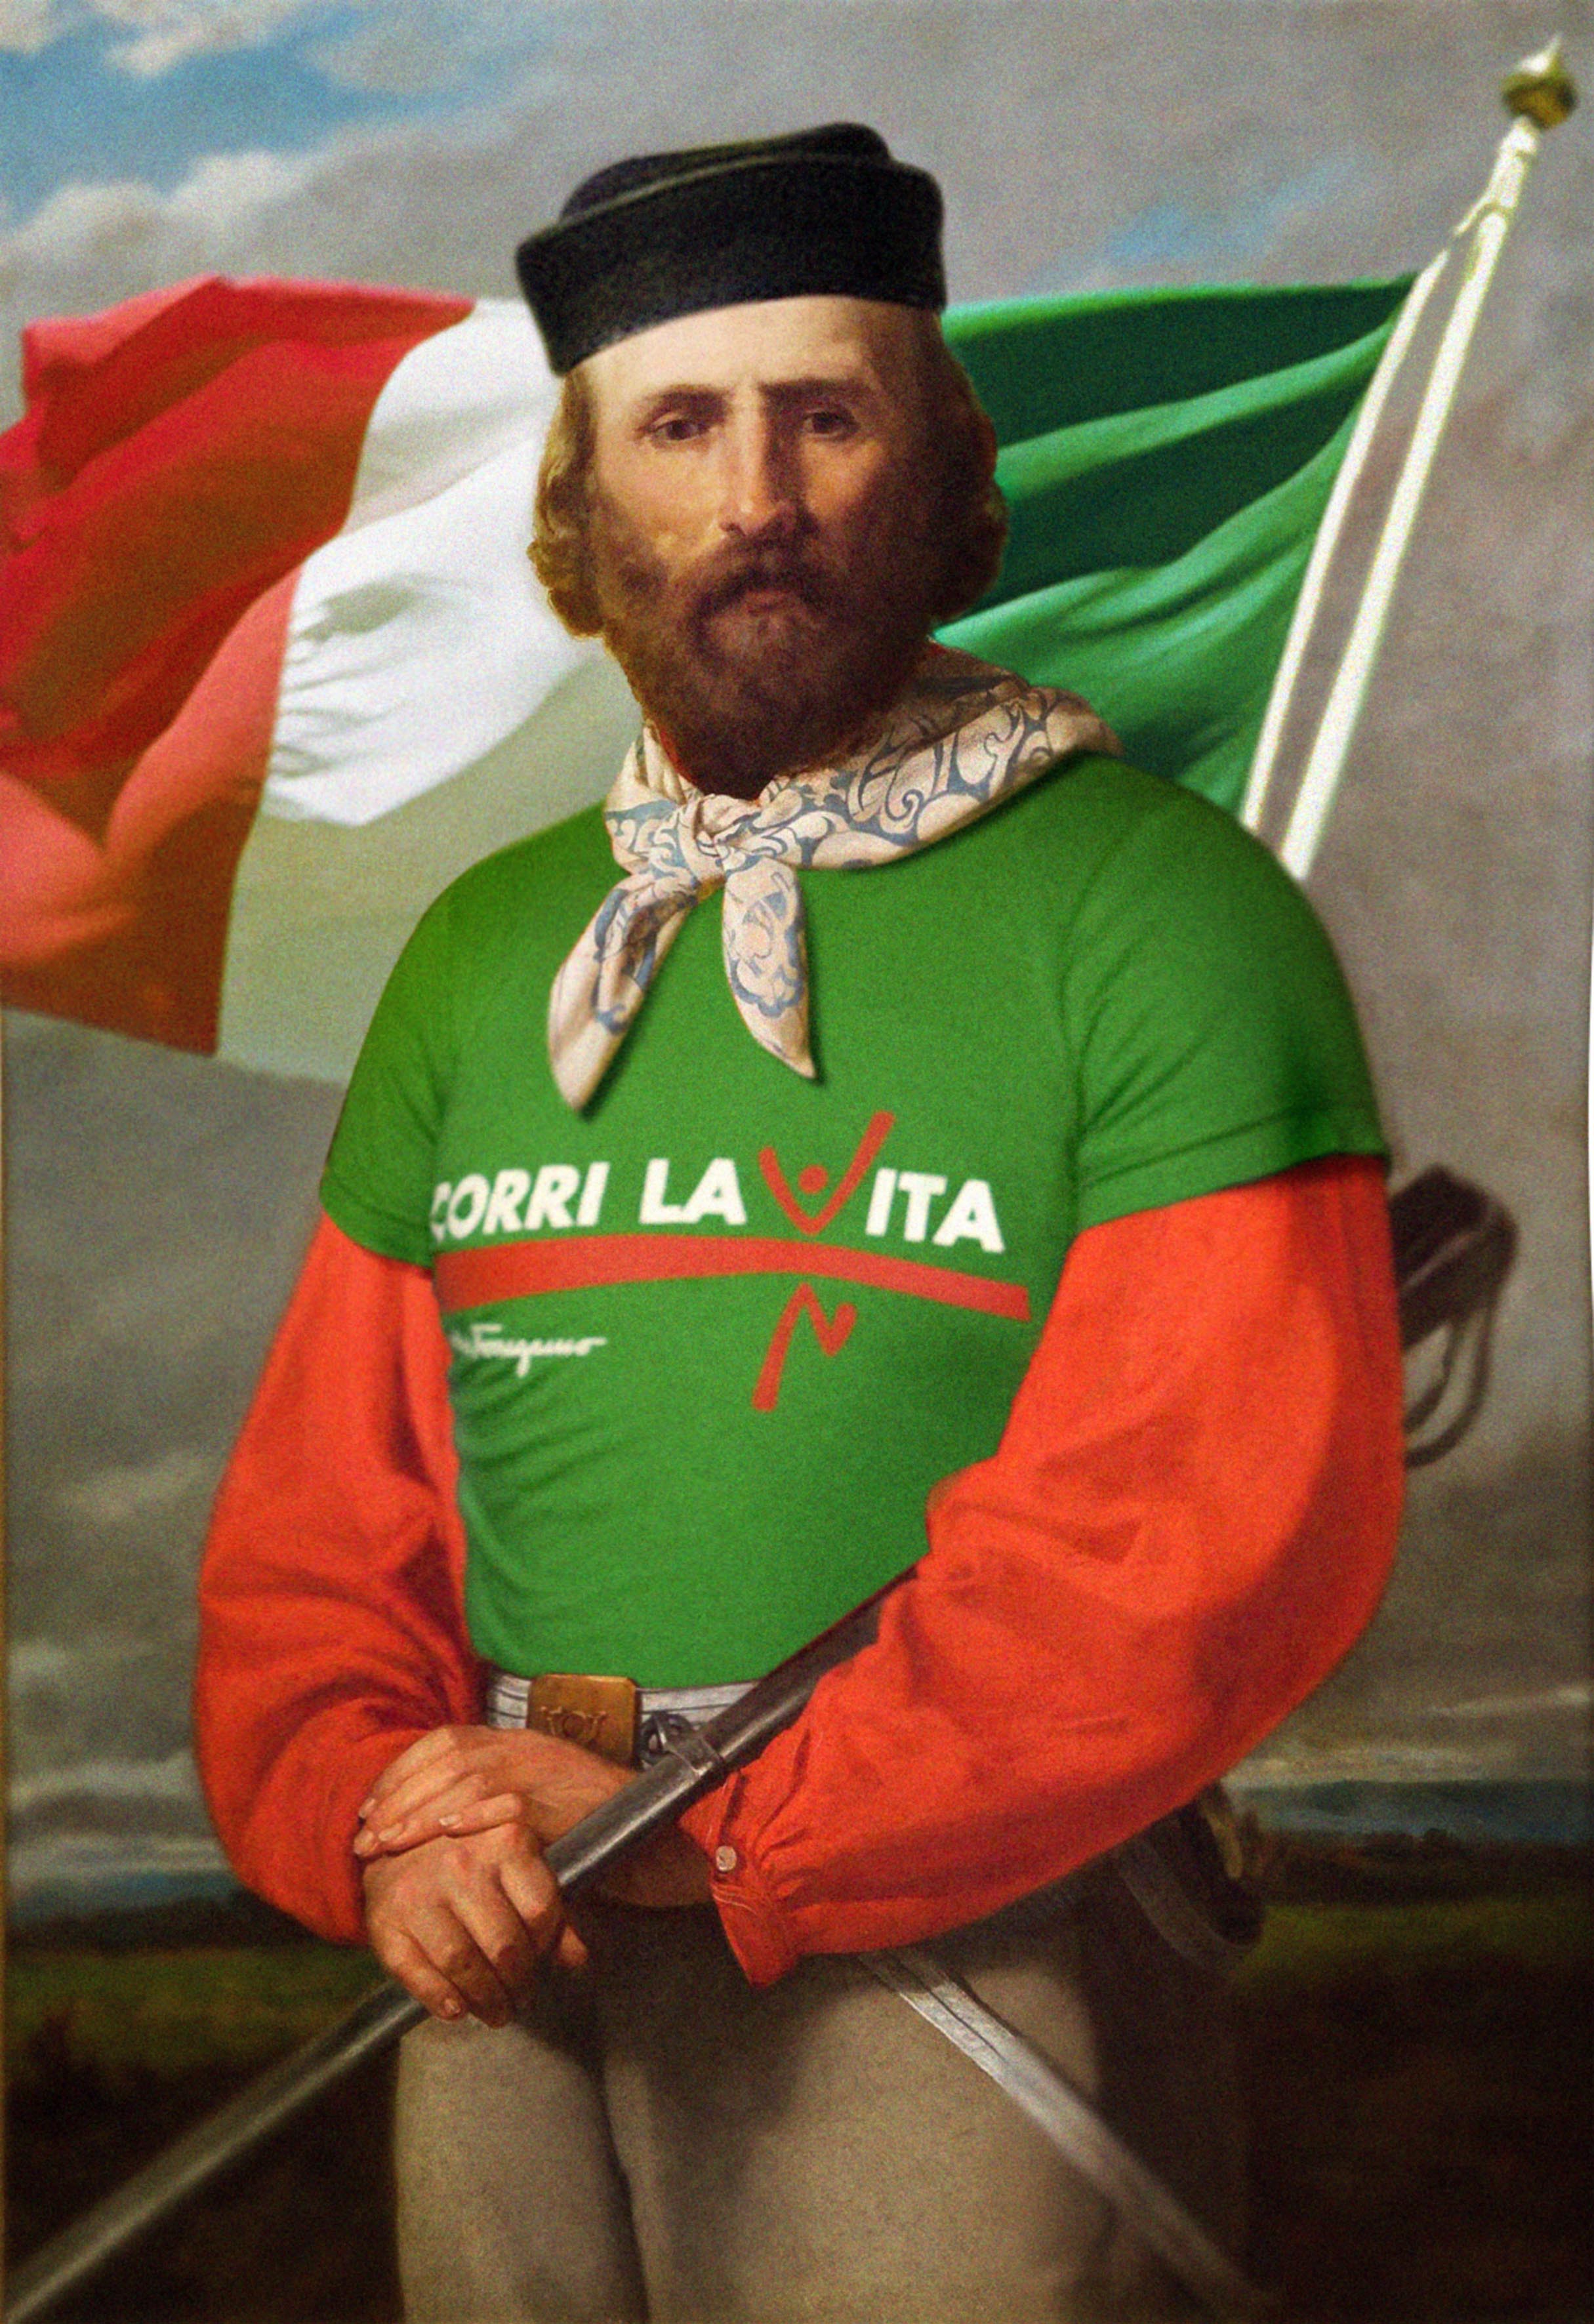 Garibaldi con la maglia di Corri la Vita